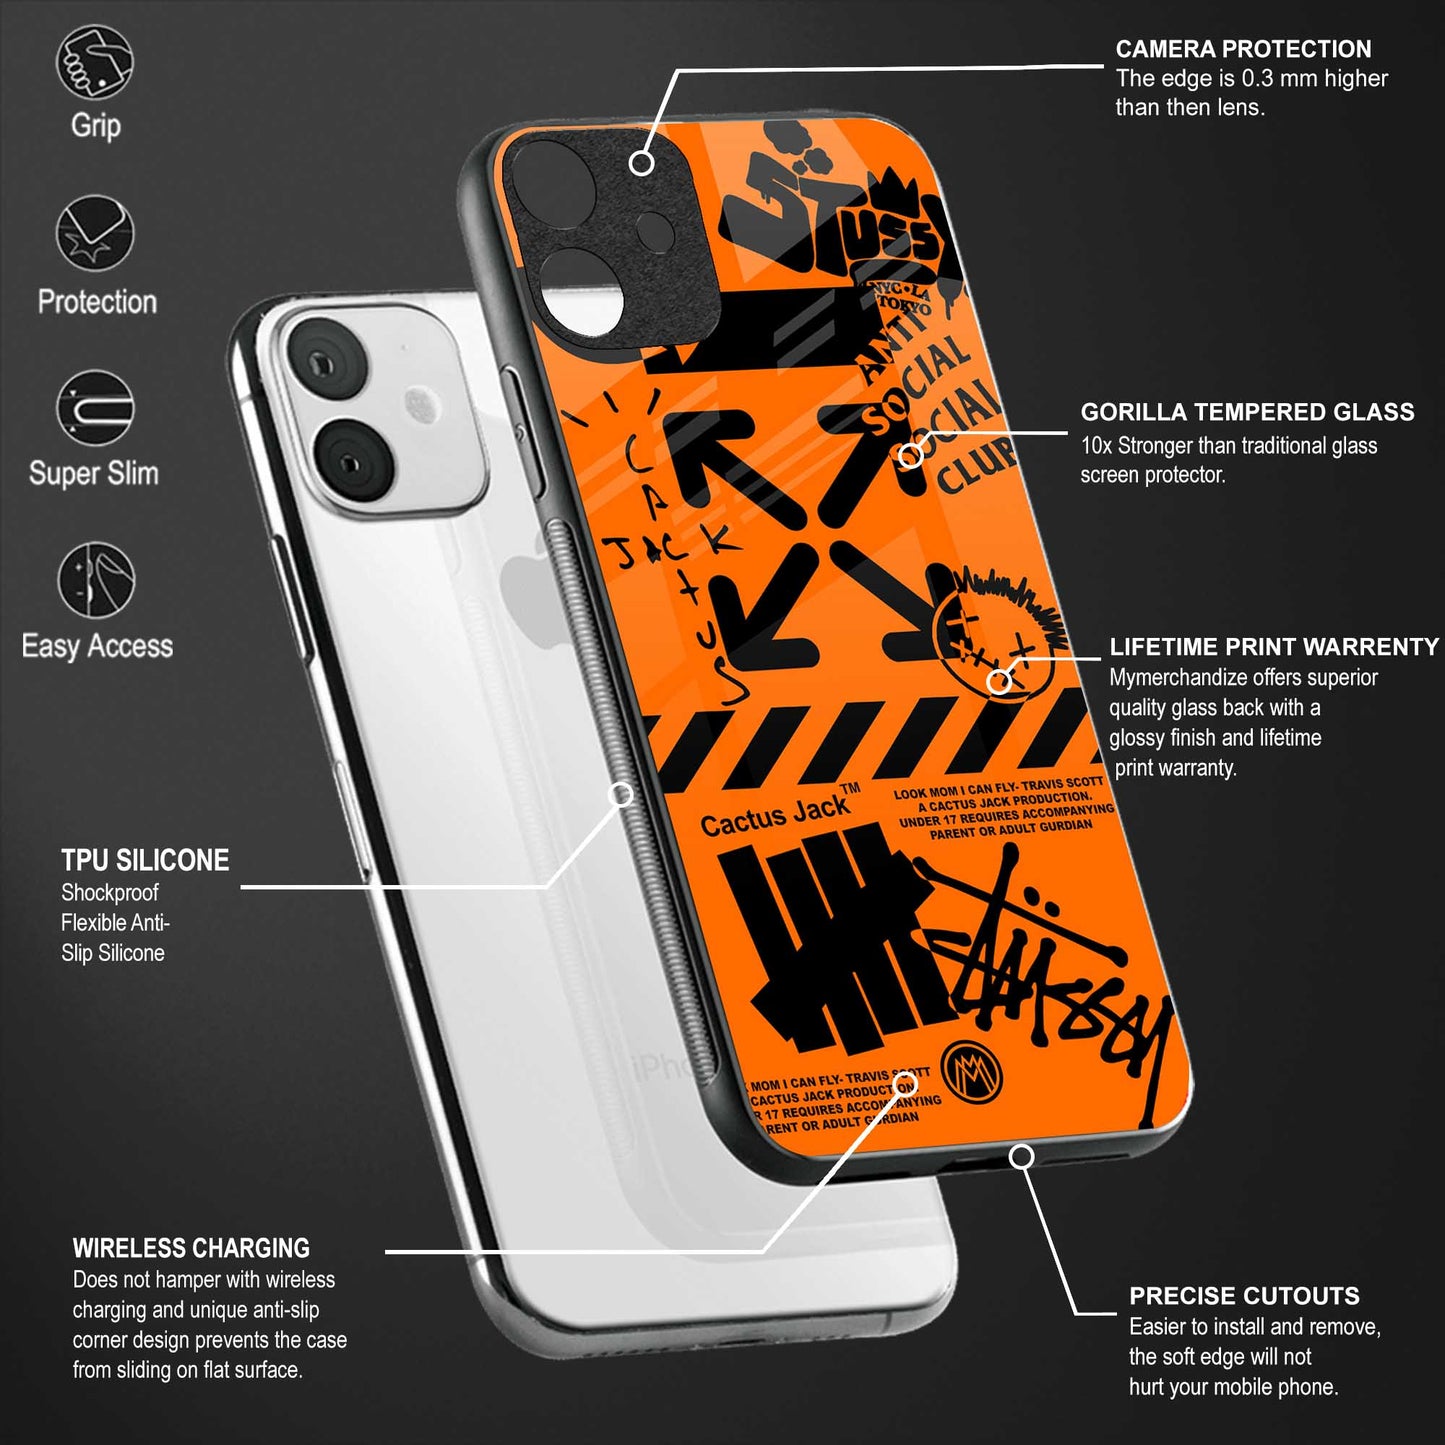 orange travis scott x anti social social club back phone cover | glass case for oppo reno 5